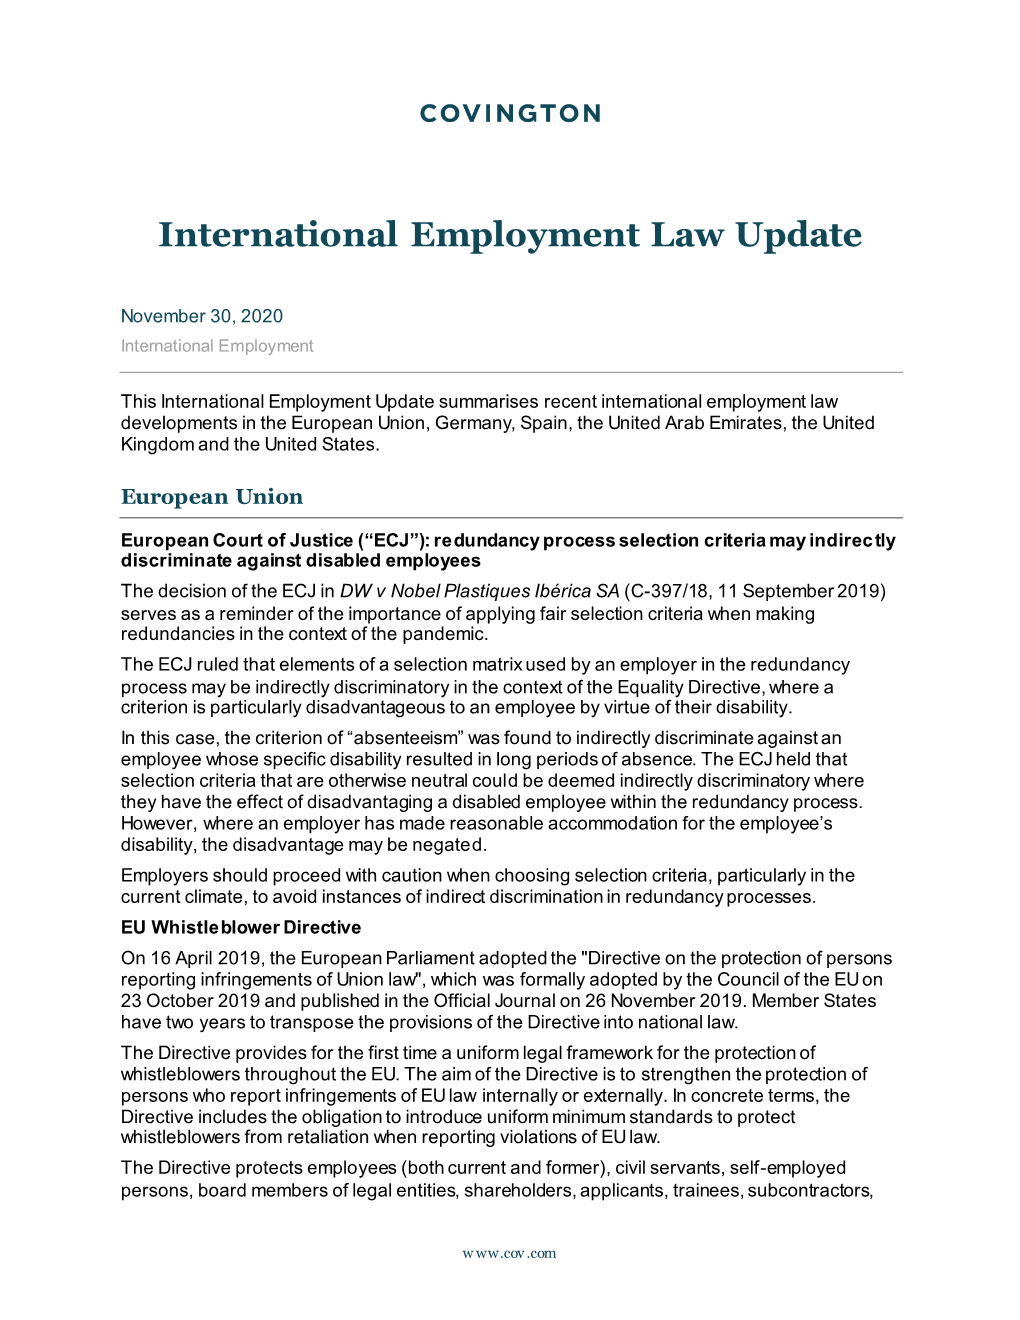 International Employment Law Update